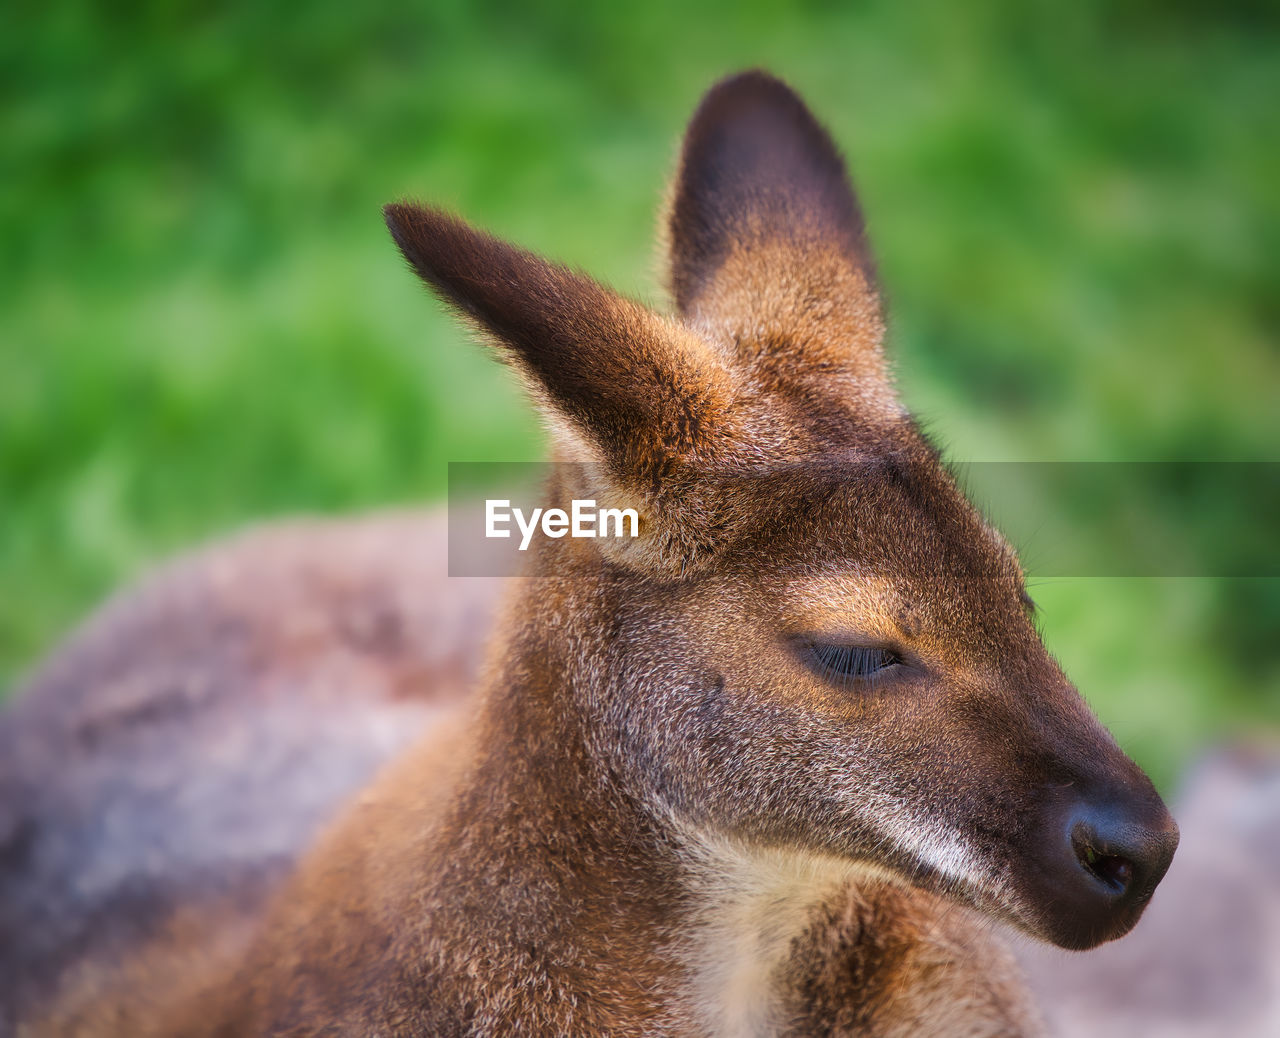 Close-up of a kangaroo looking away